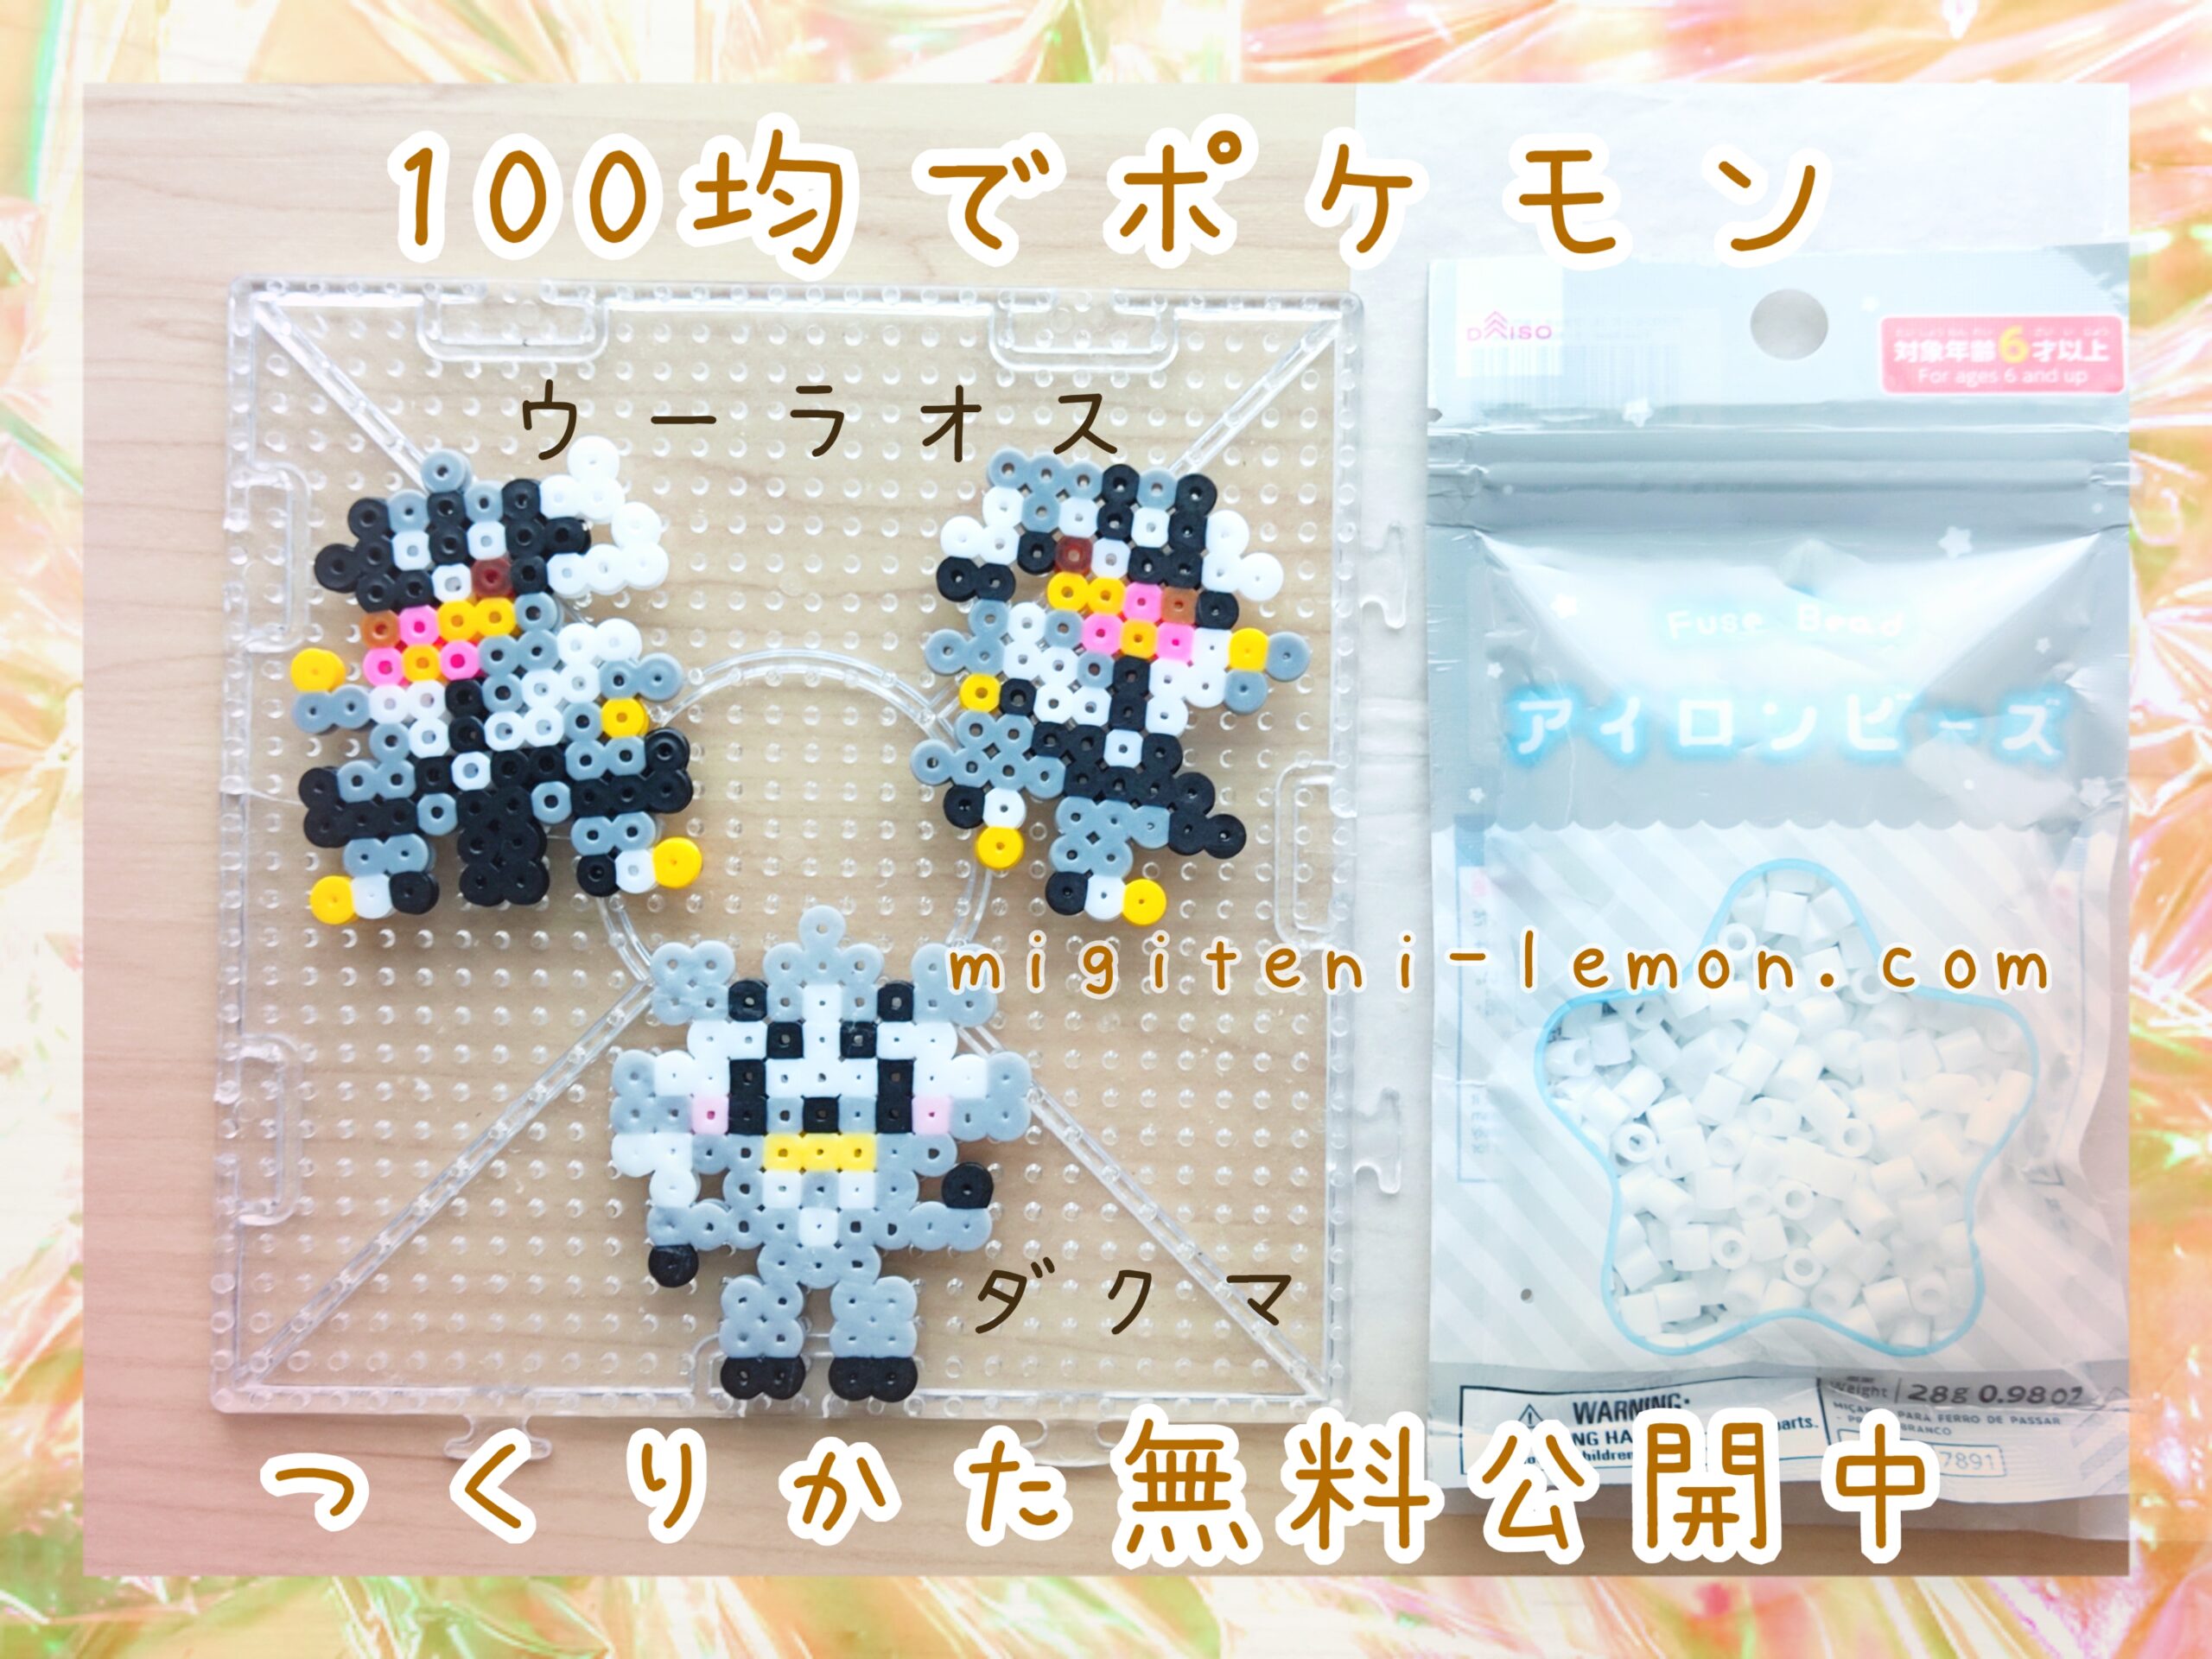 wulaosu-urshifu-galar-pokemon-beads-handmade